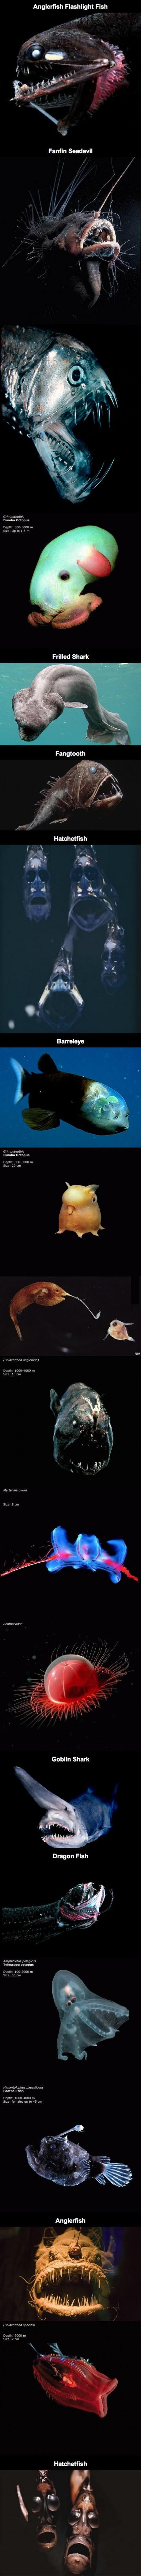 Существа живущие глубоко под водой в районе Марианской впадины. 